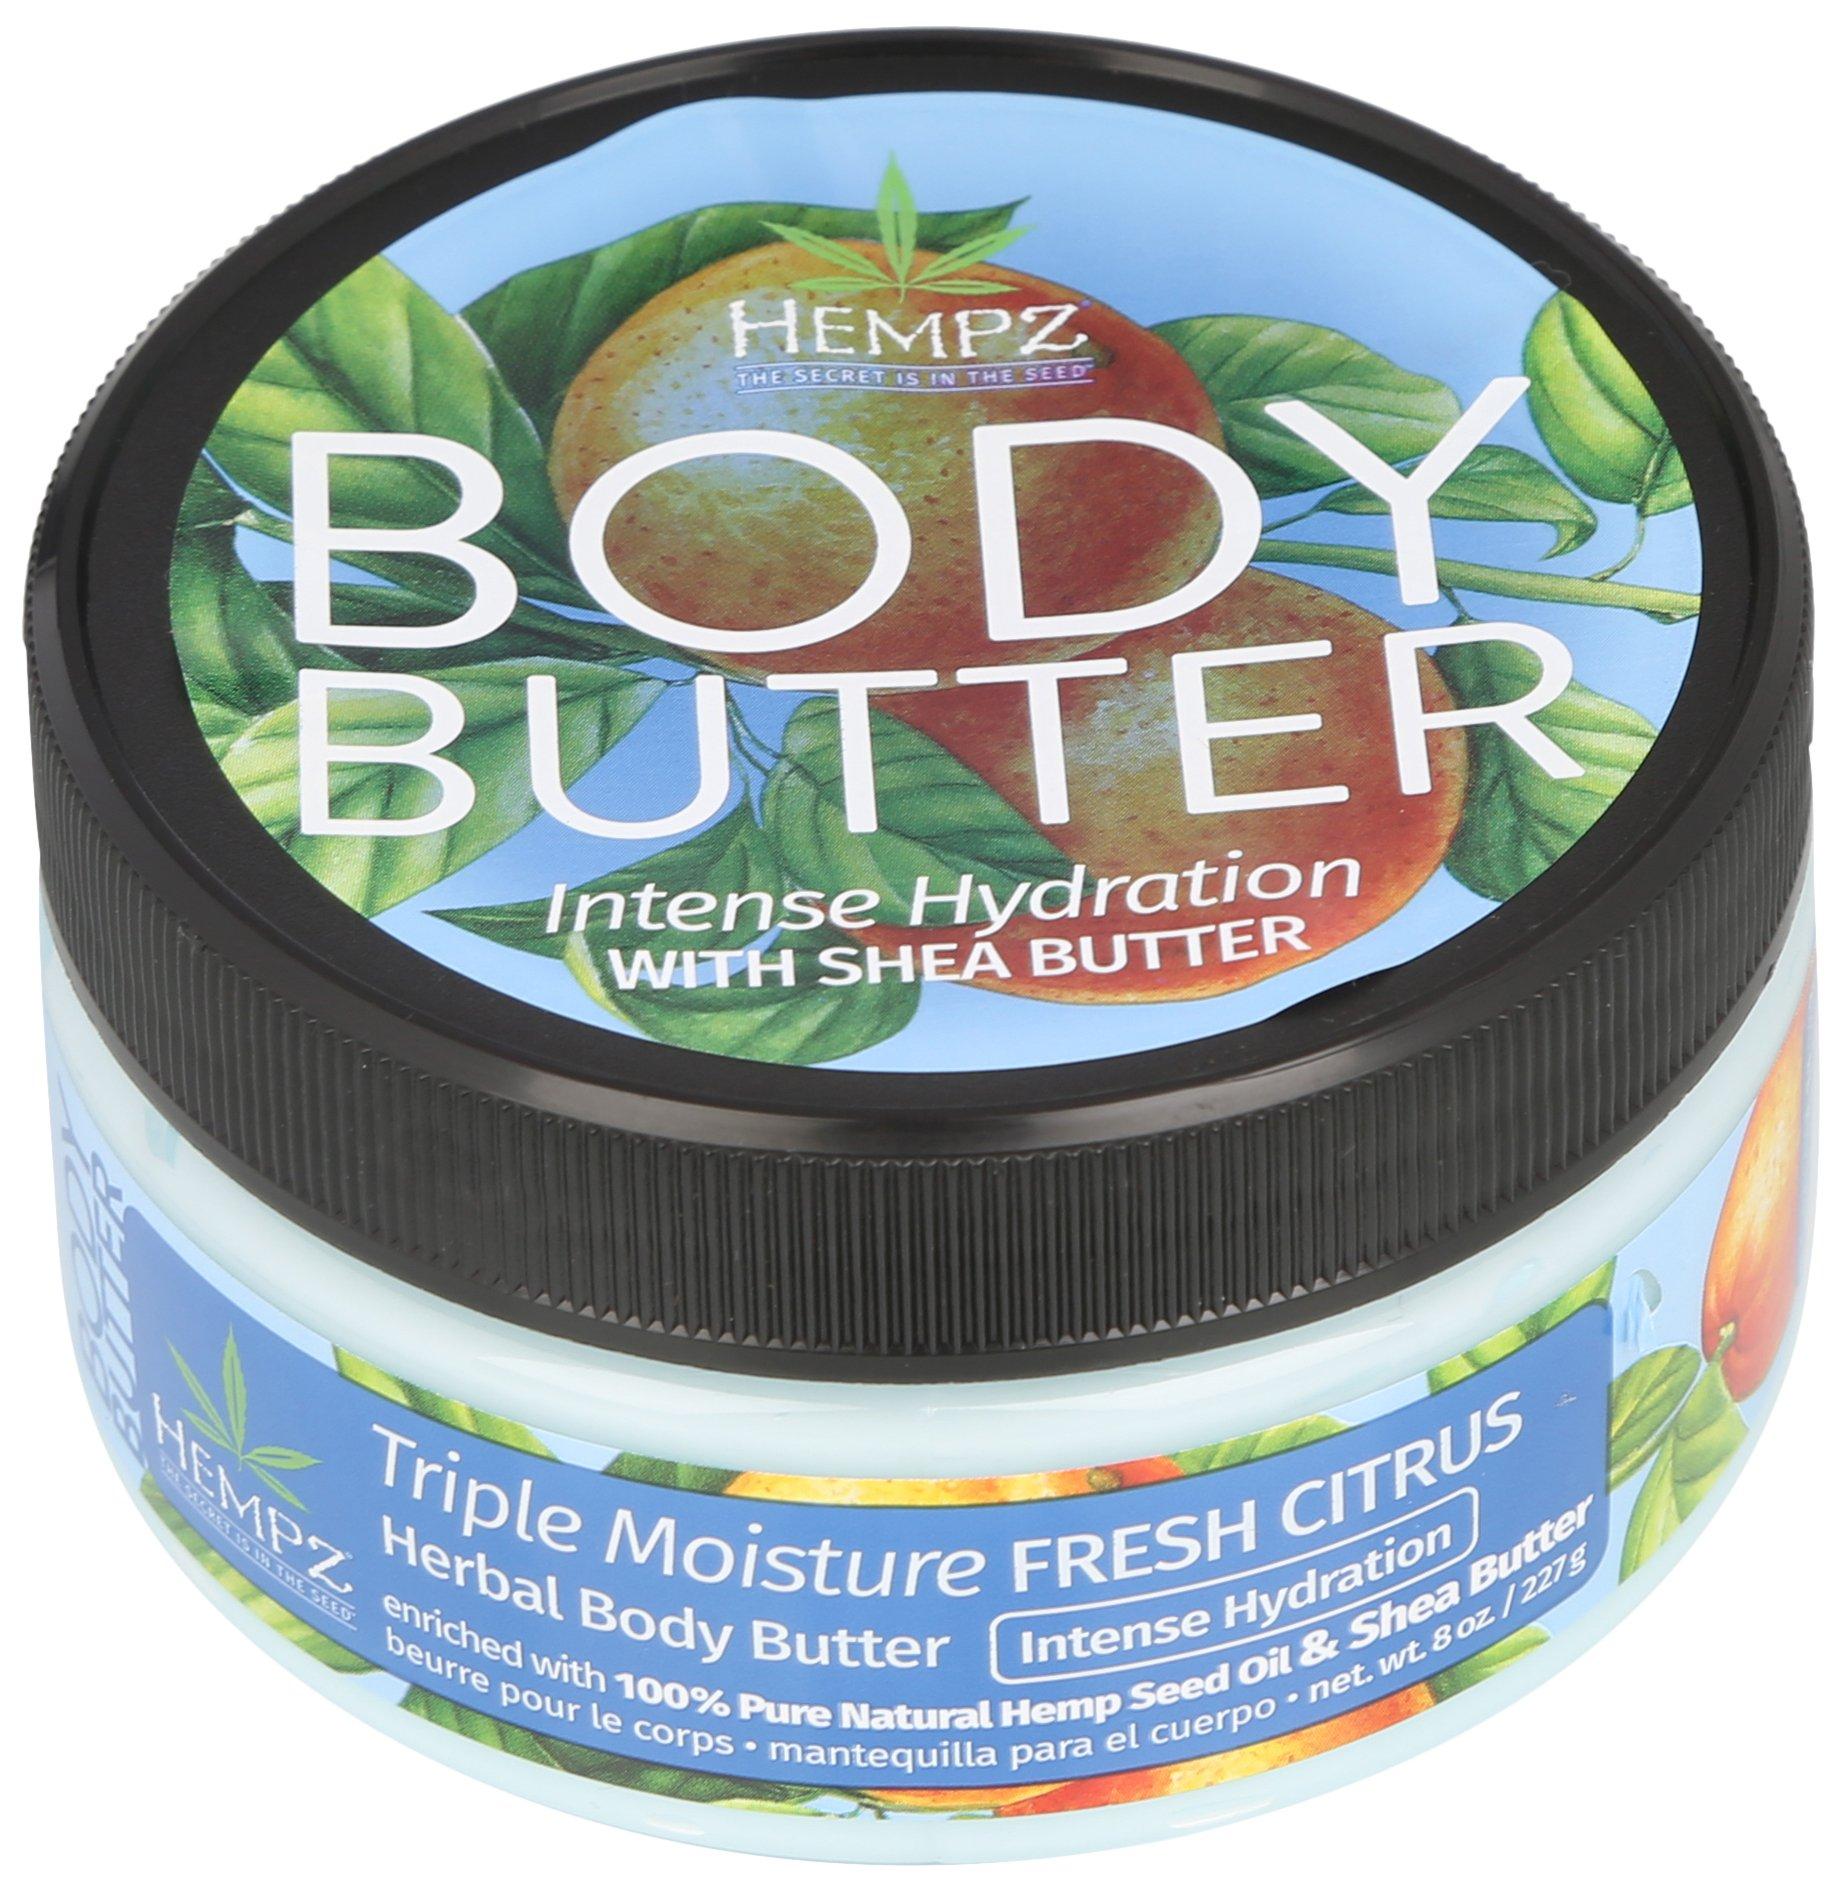 Fresh Citrus Herbal Body Butter